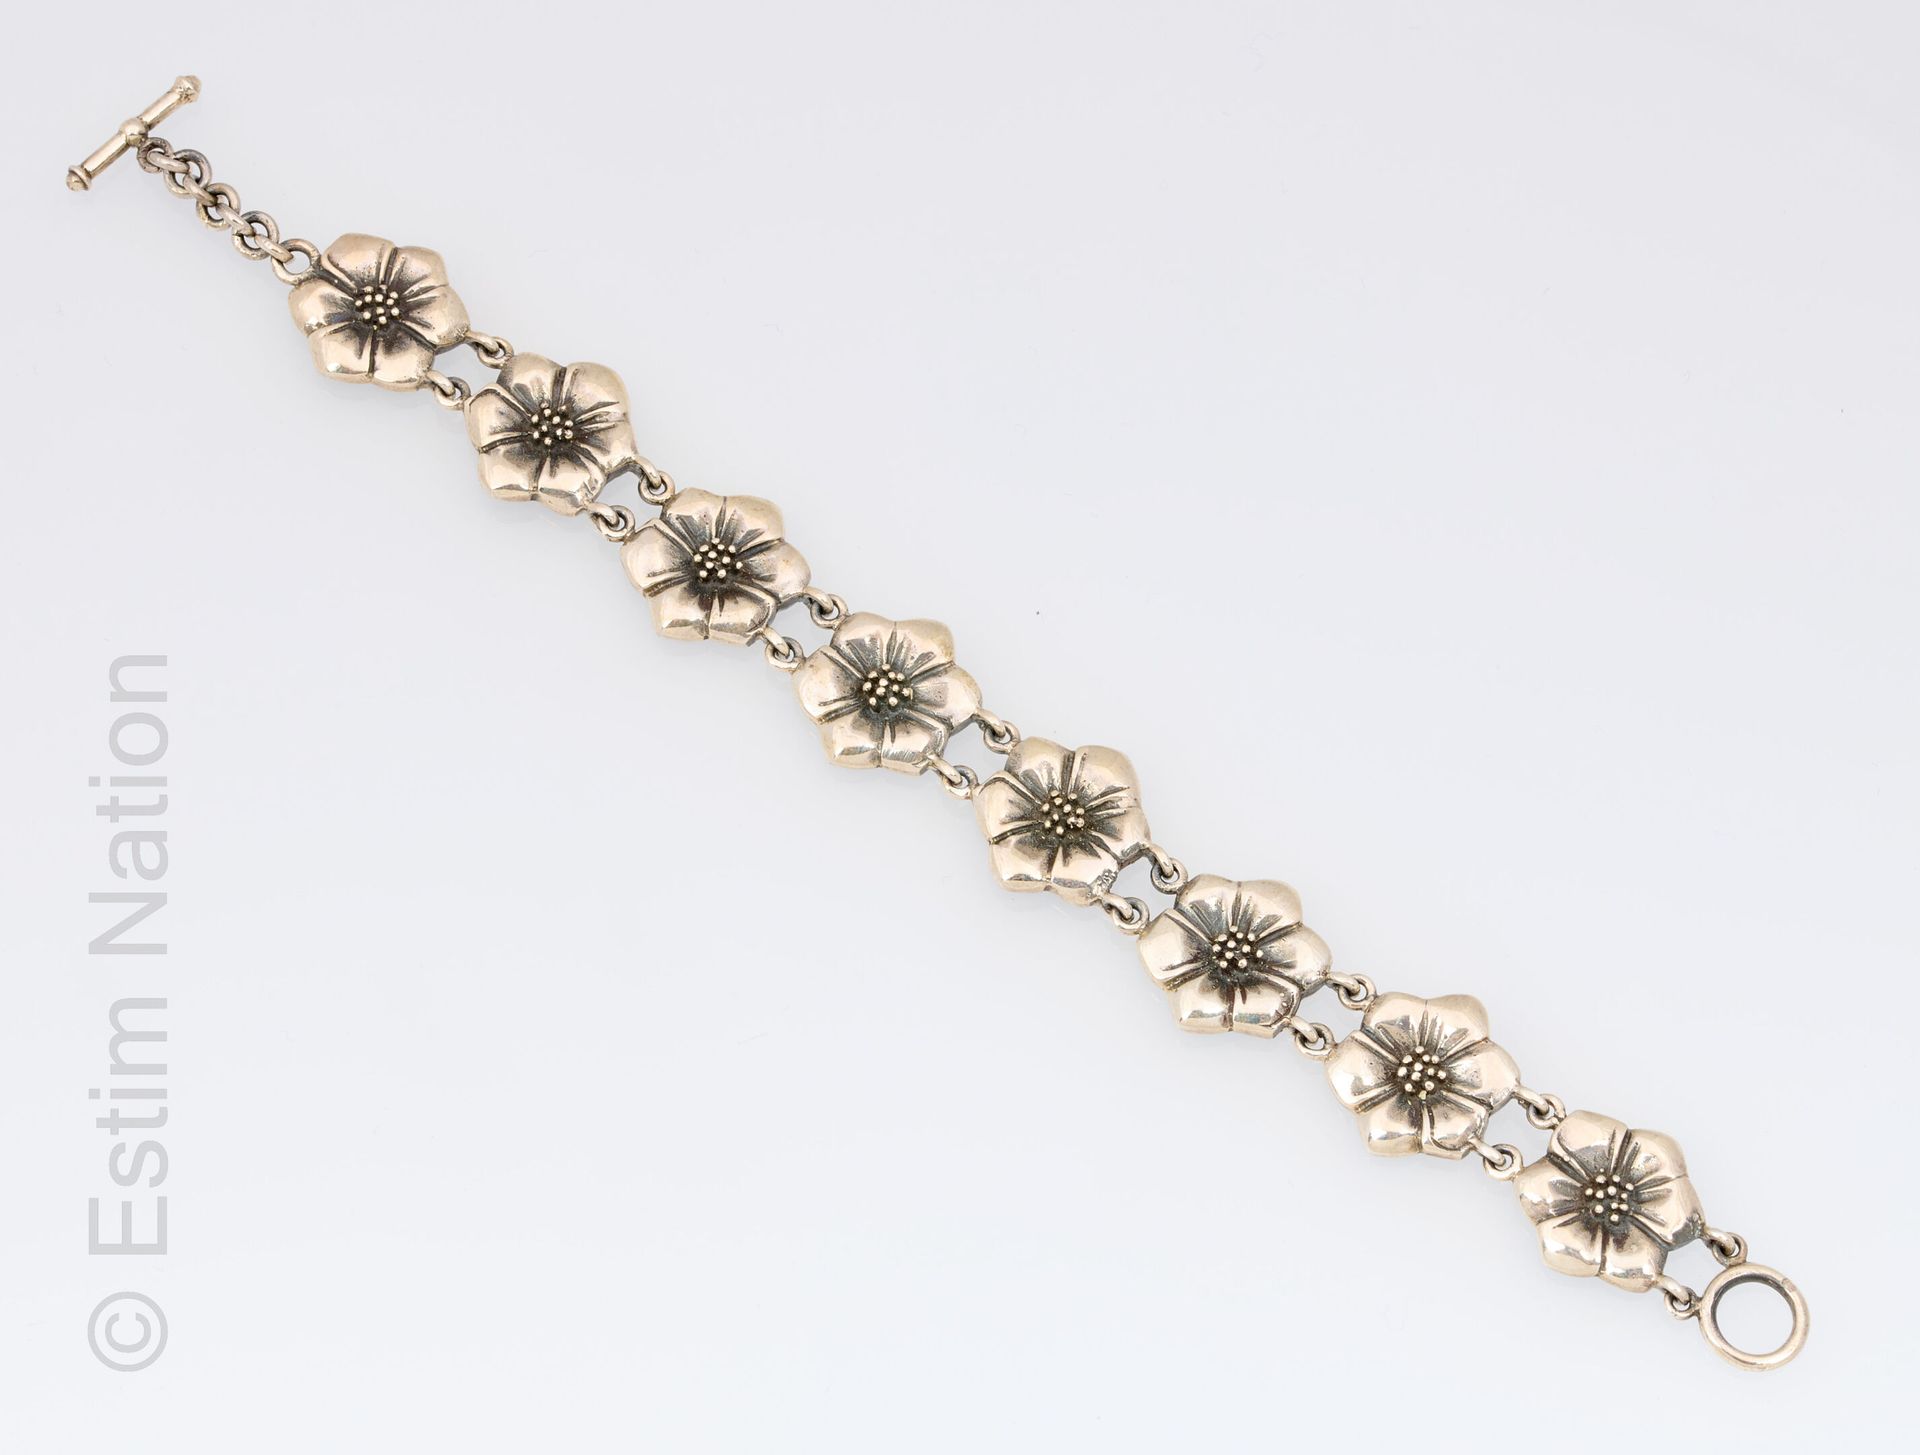 BRACELET ARGENT 925/°°银制铰链式手镯，有八朵花。棒状扣 
毛重 : 27.1 克
长度 : 18.5 cm